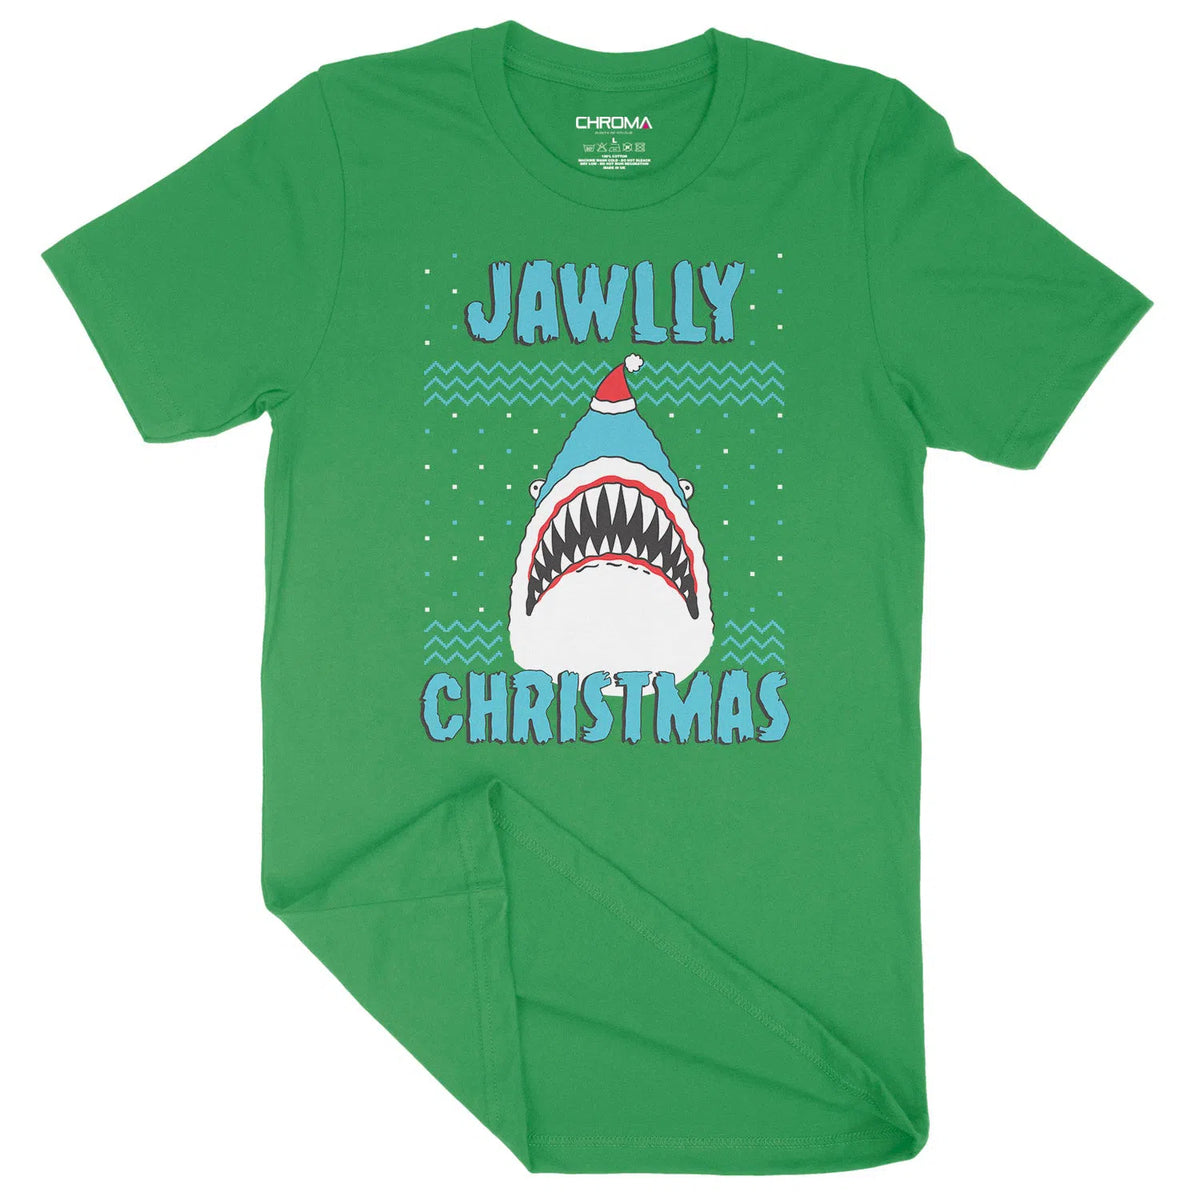 Jawlly Christmas | Unisex Christmas T-Shirt Chroma Clothing